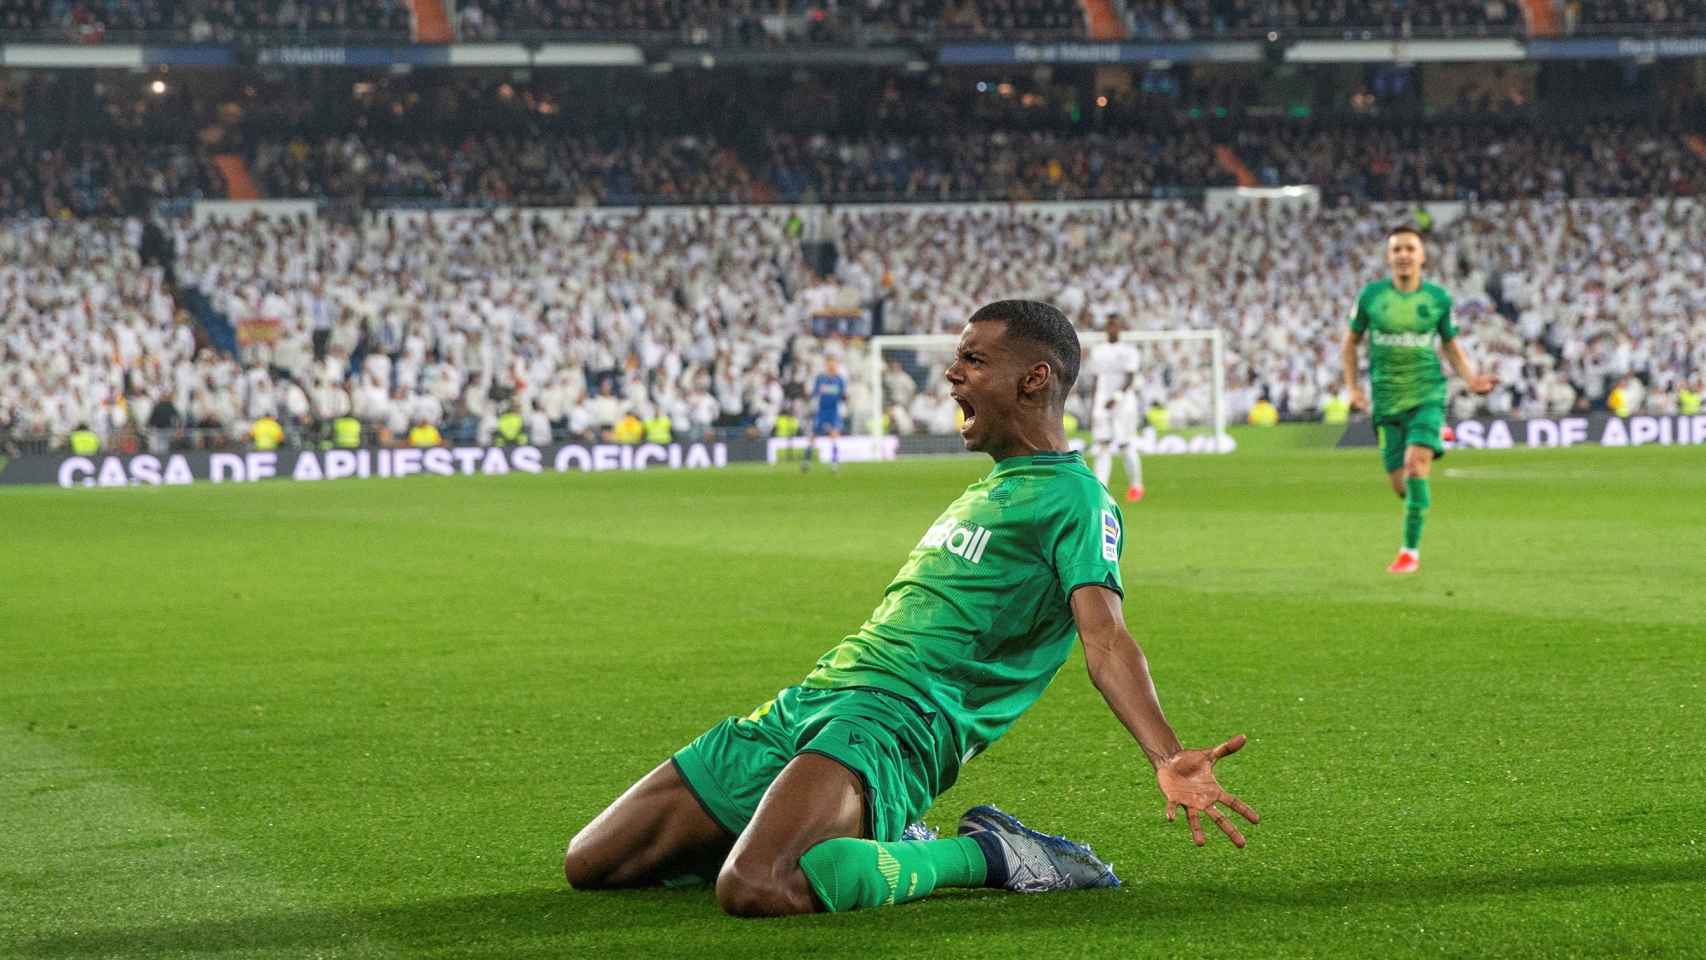 Isak celebra uno de sus goles en el Santiago Bernabéu